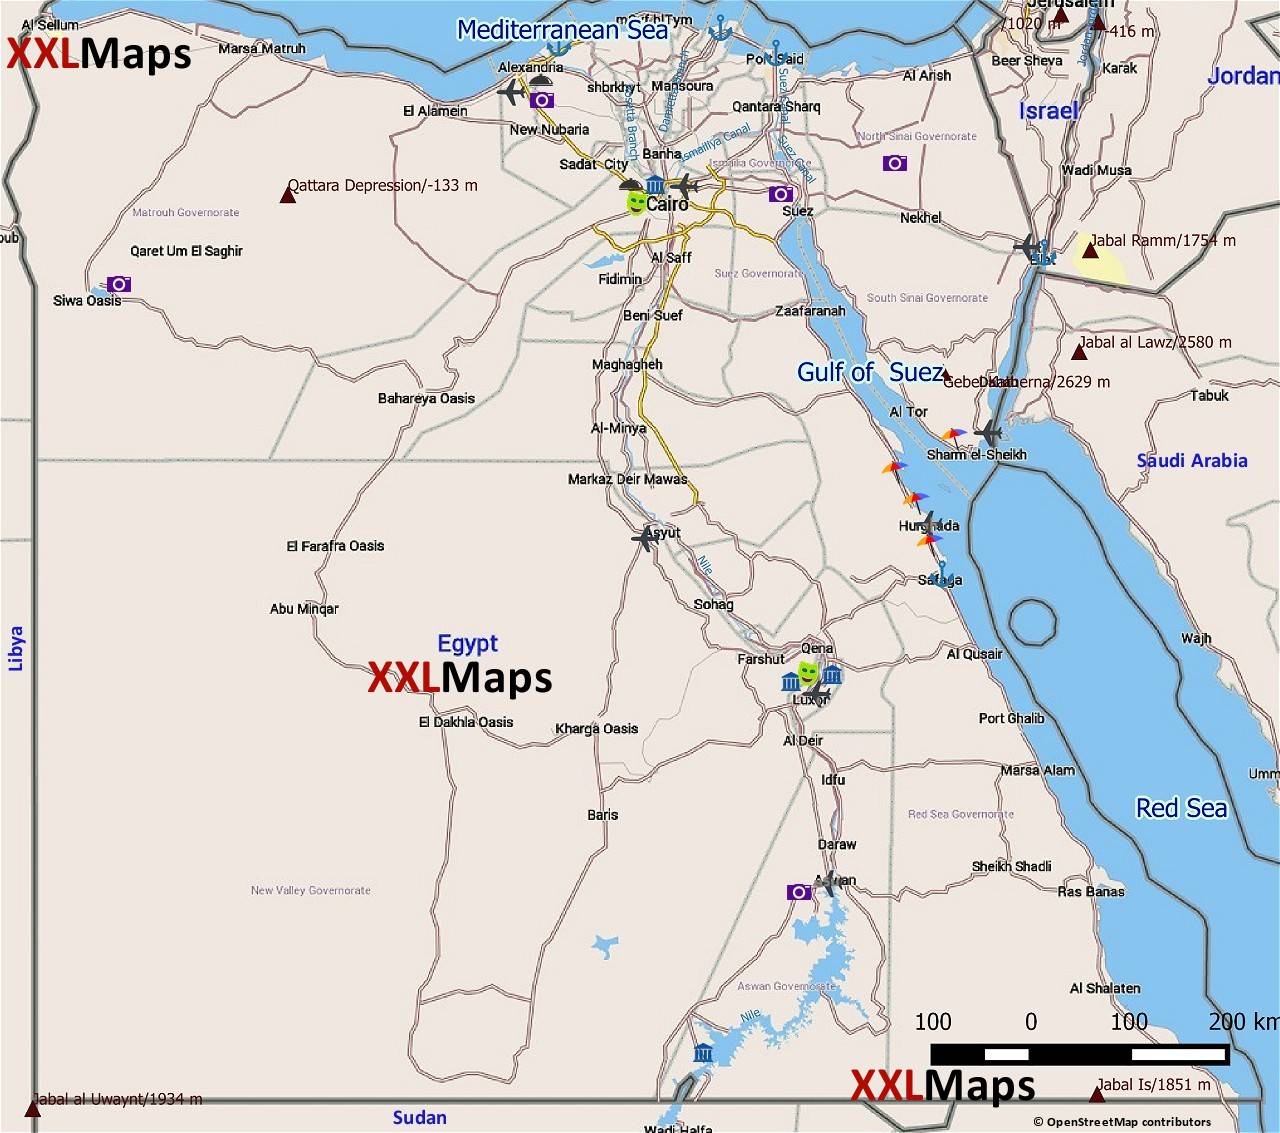 Mappa turistica di Egitto